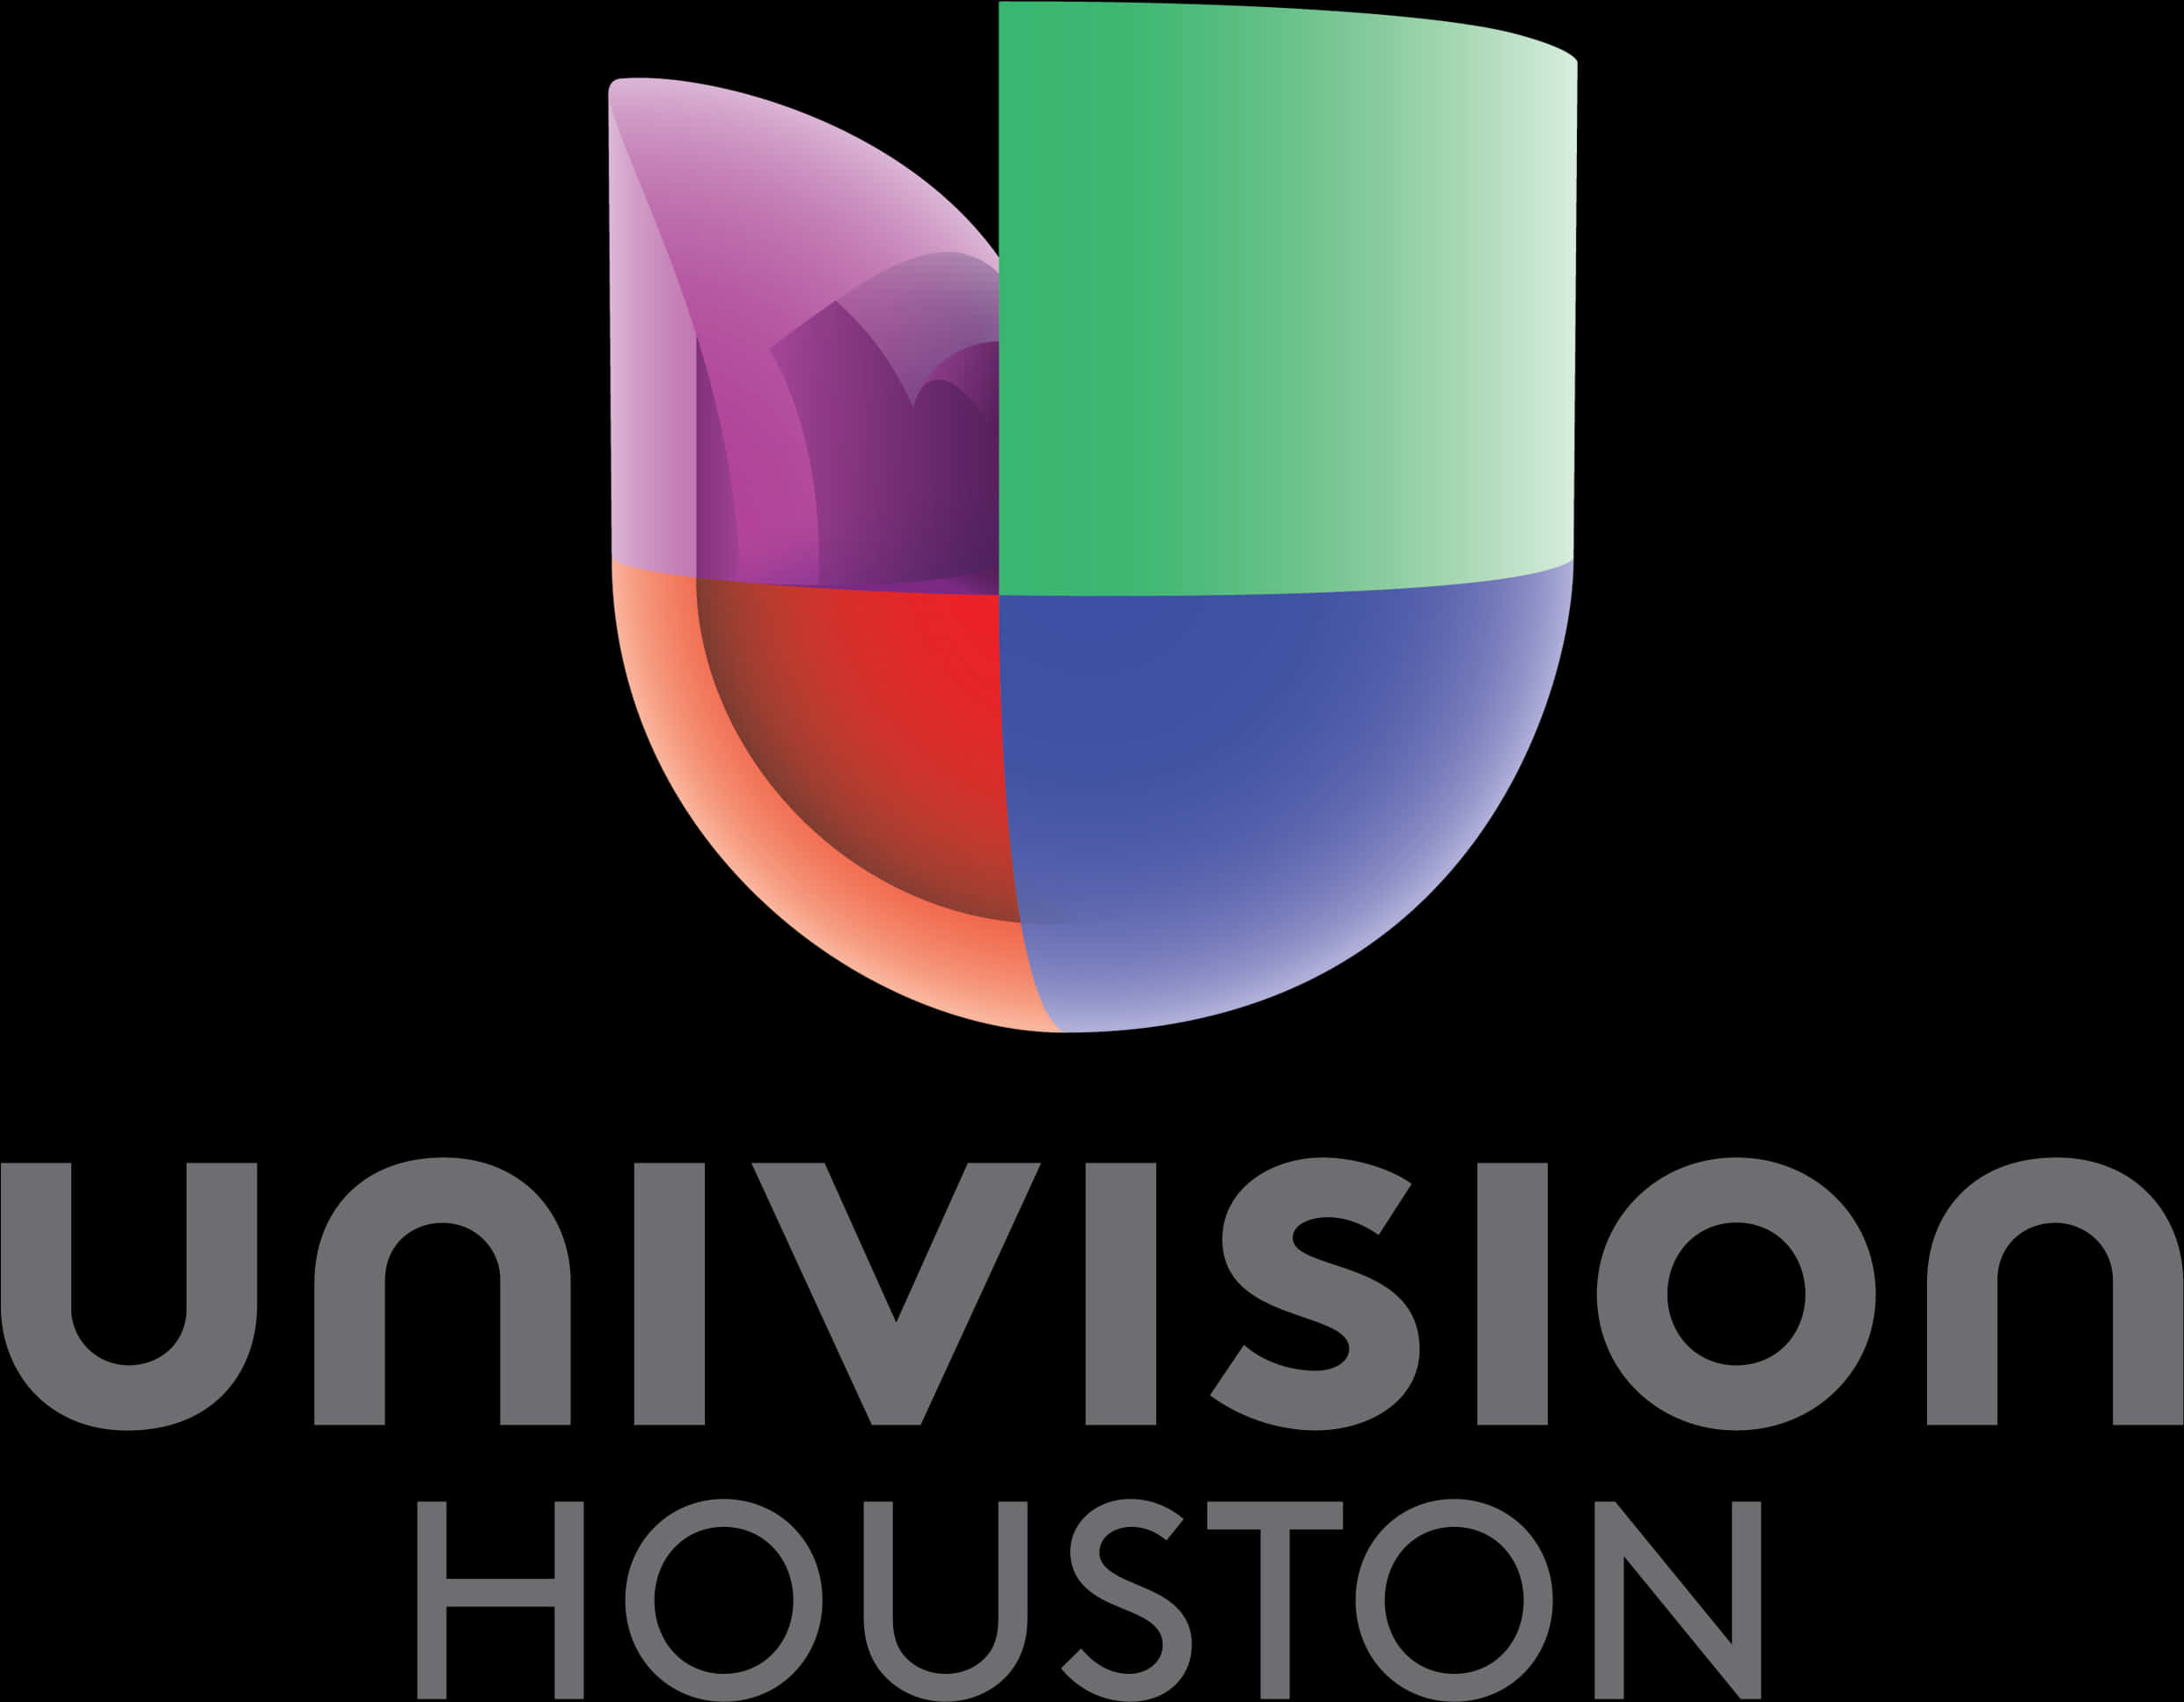 Univision Houston Logo PNG image